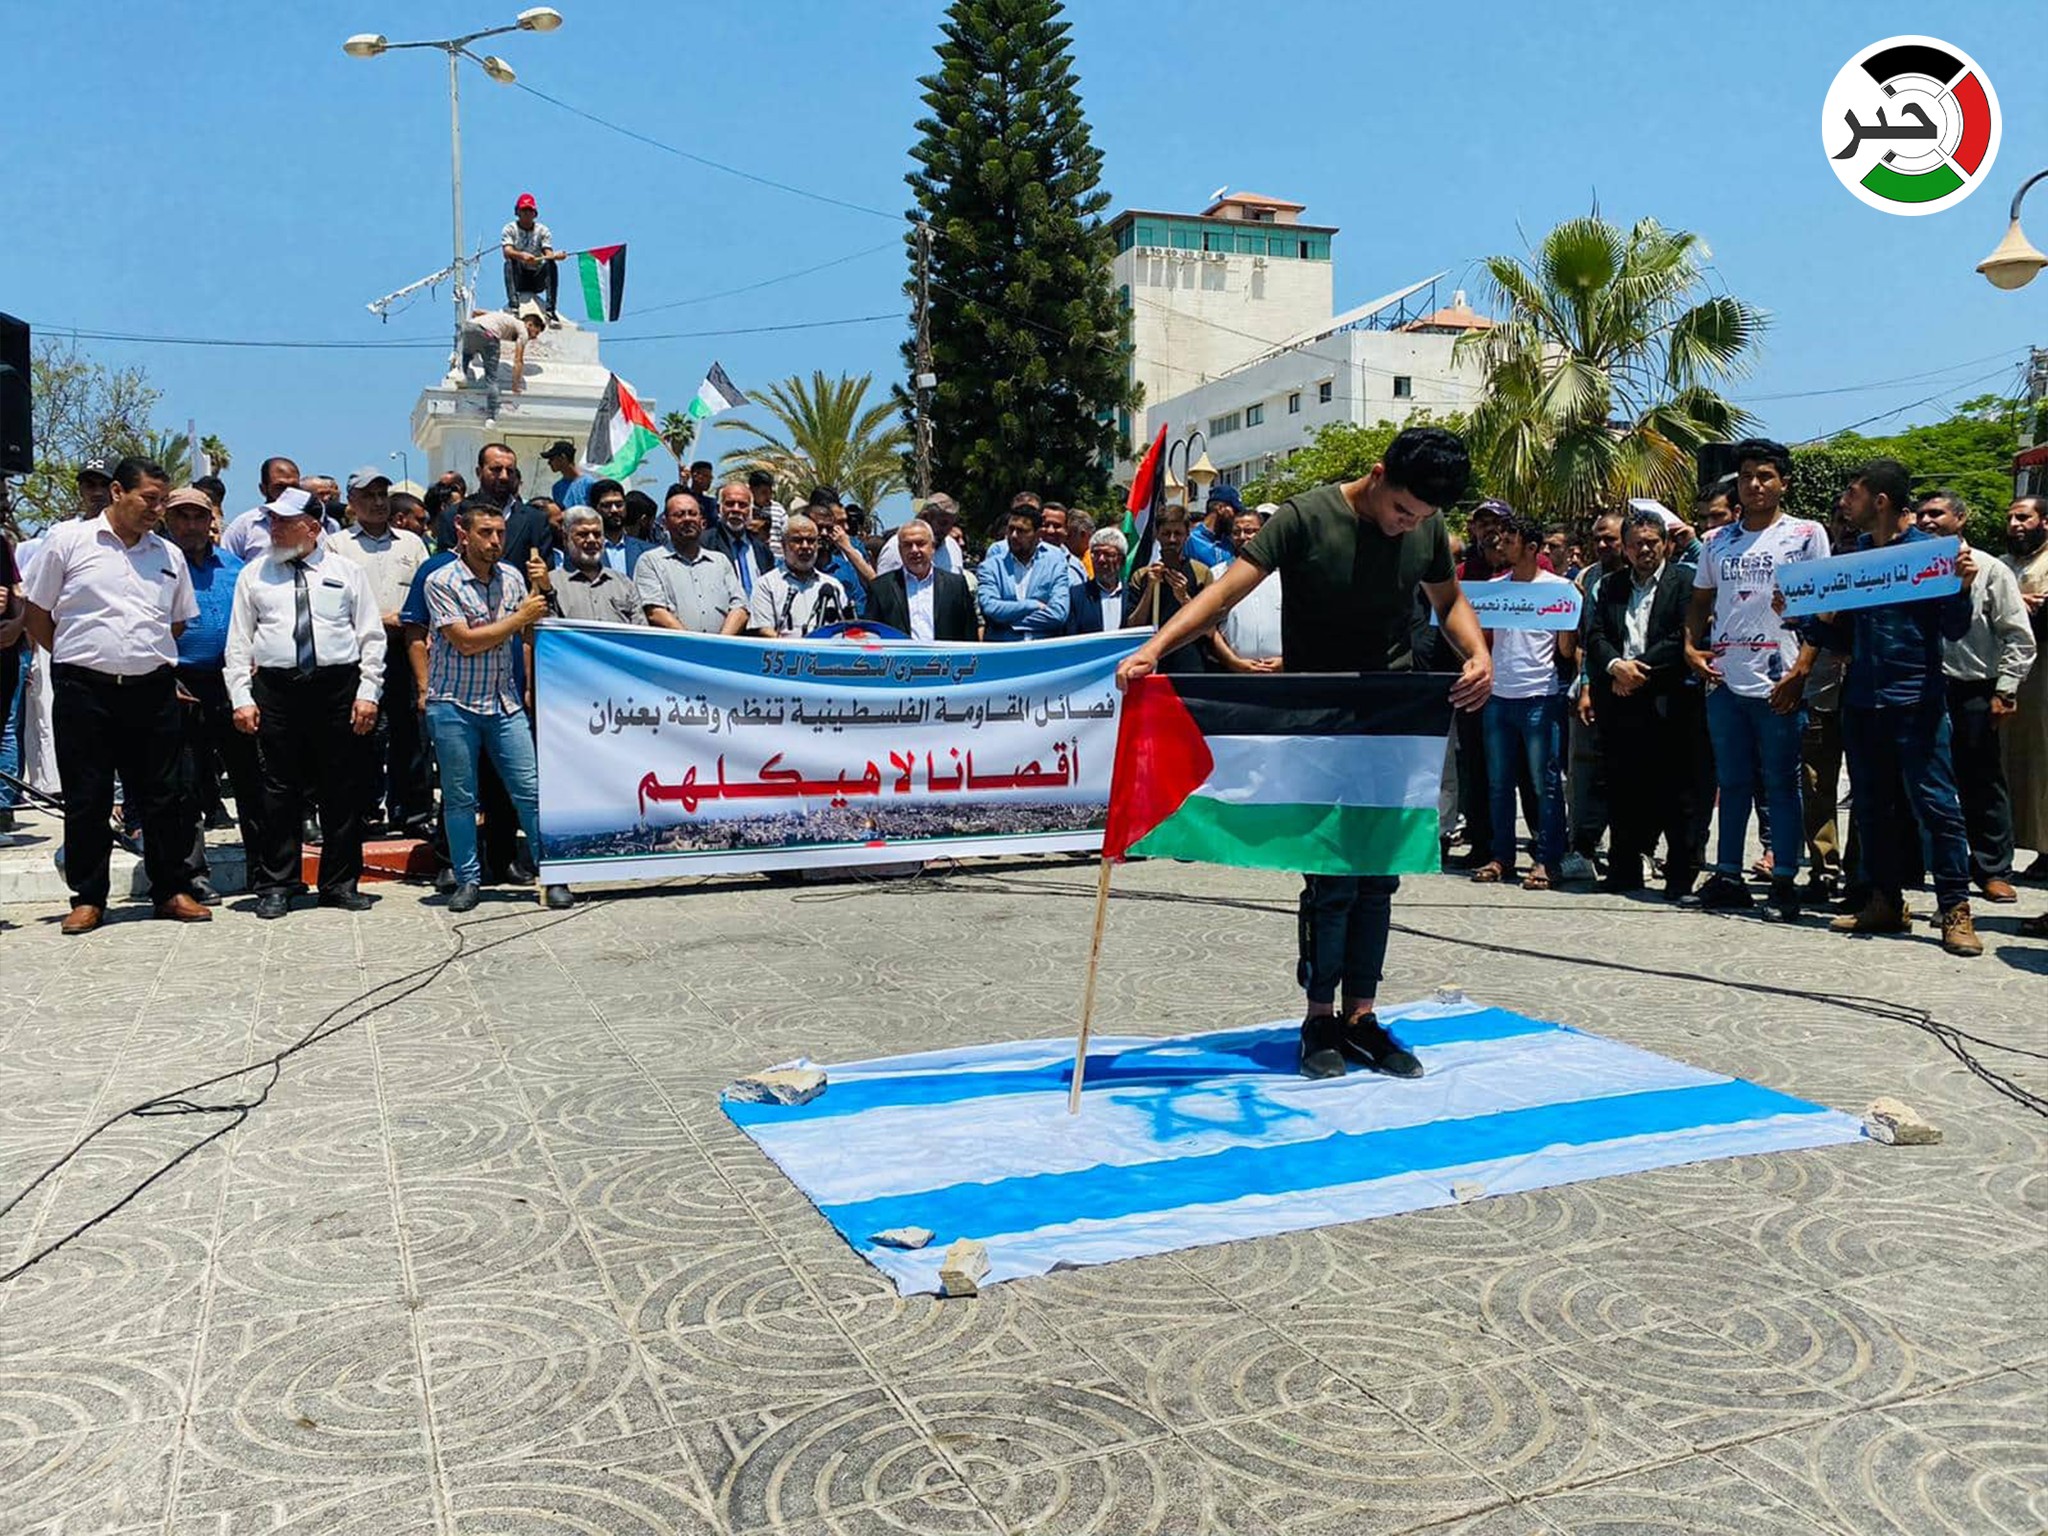 بالصور: فصائل المقاومة بغزّة تُنظم وقفة بمناسبة ذكرى النكسة ورفضًا للعدوان على الأقصى